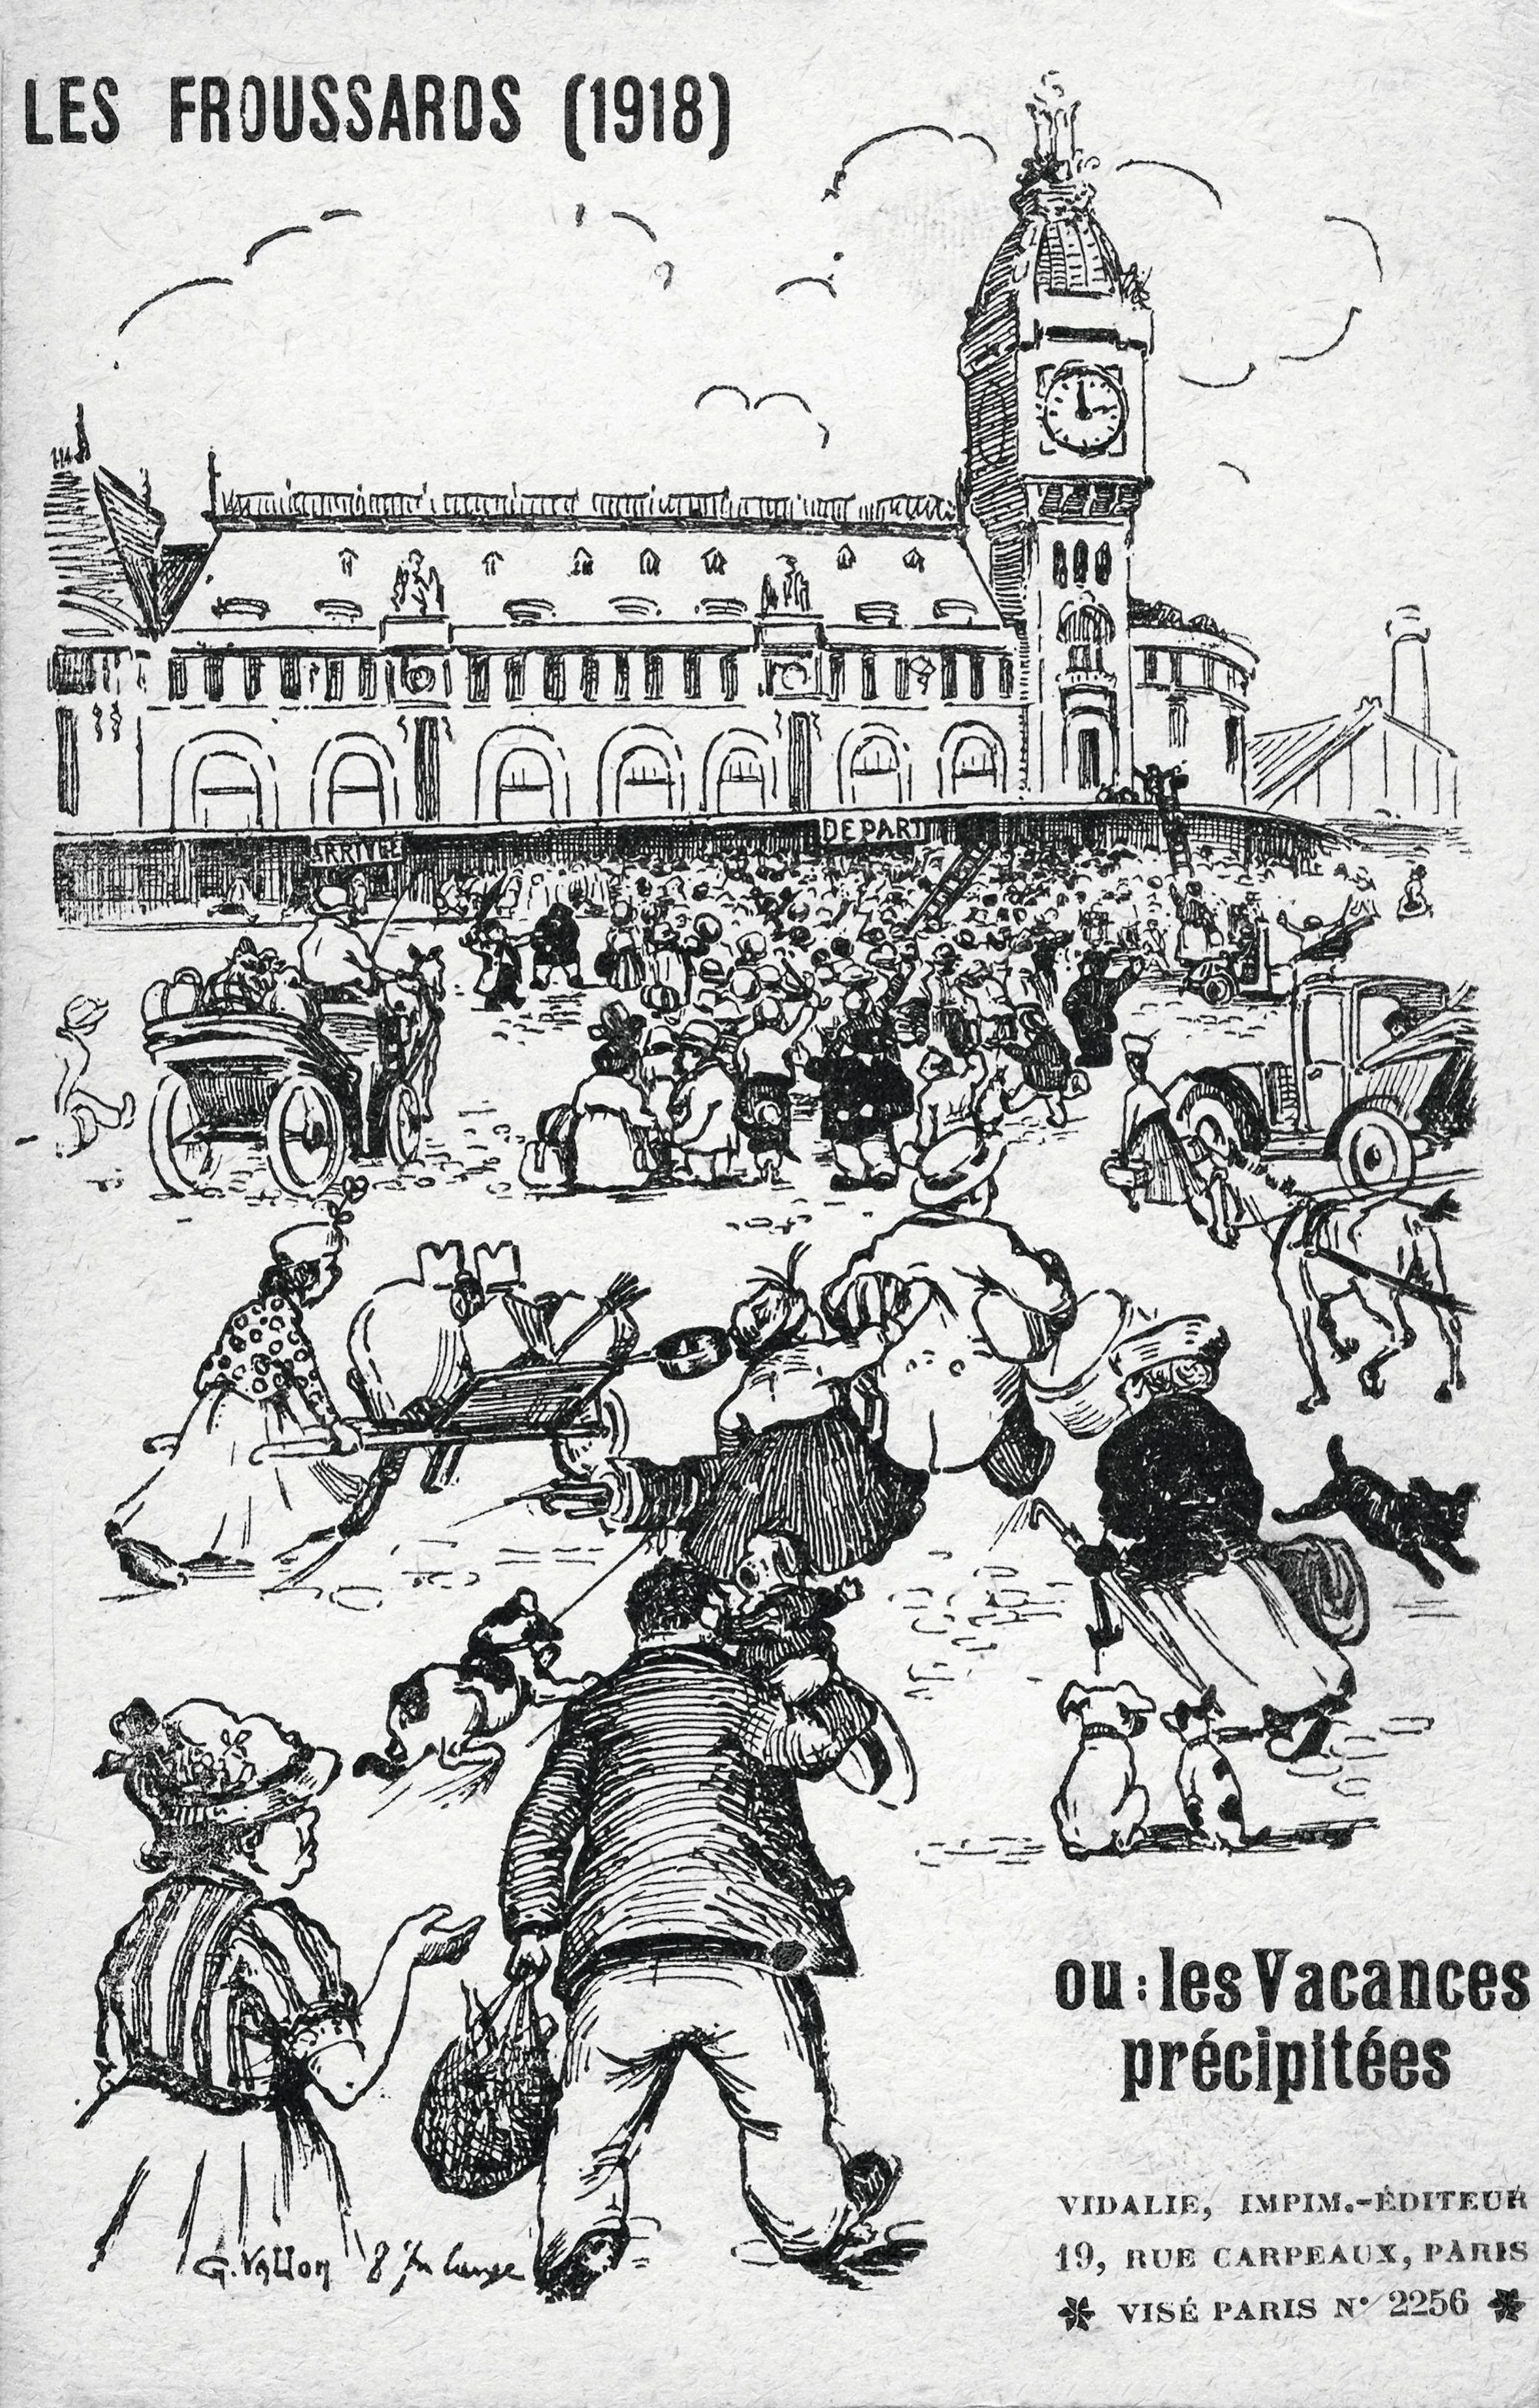 « Les froussards », carte illustrée, 1918, Paris